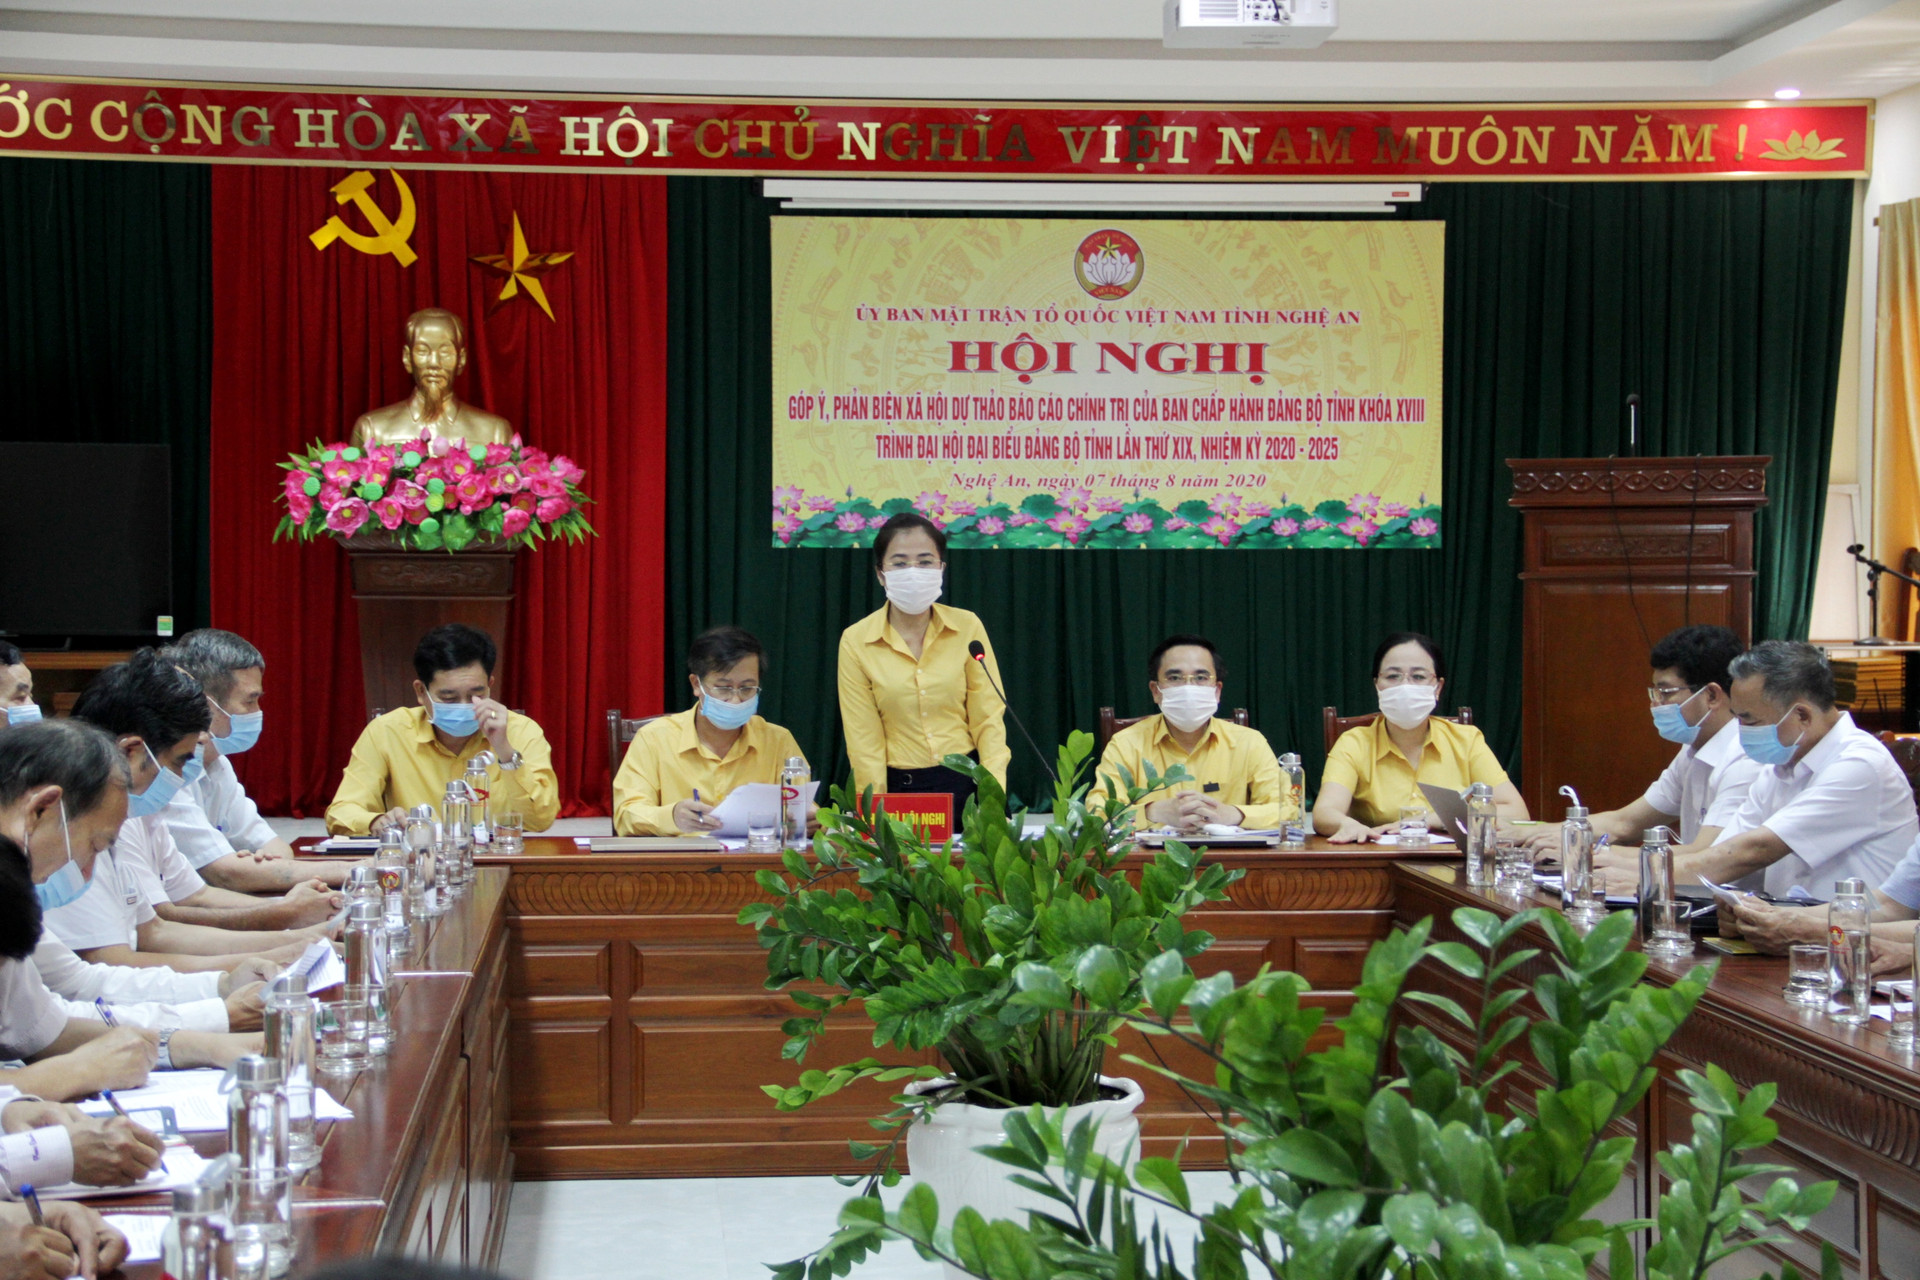 Chiều ngày 7/8, Ủy ban MTTQ tỉnh Nghệ An tổ chức Hội nghị góp ý, phản biện về dự thảo báo cáo chính trị chuẩn bị cho Đại hội Đảng bộ tỉnh sắp tới.